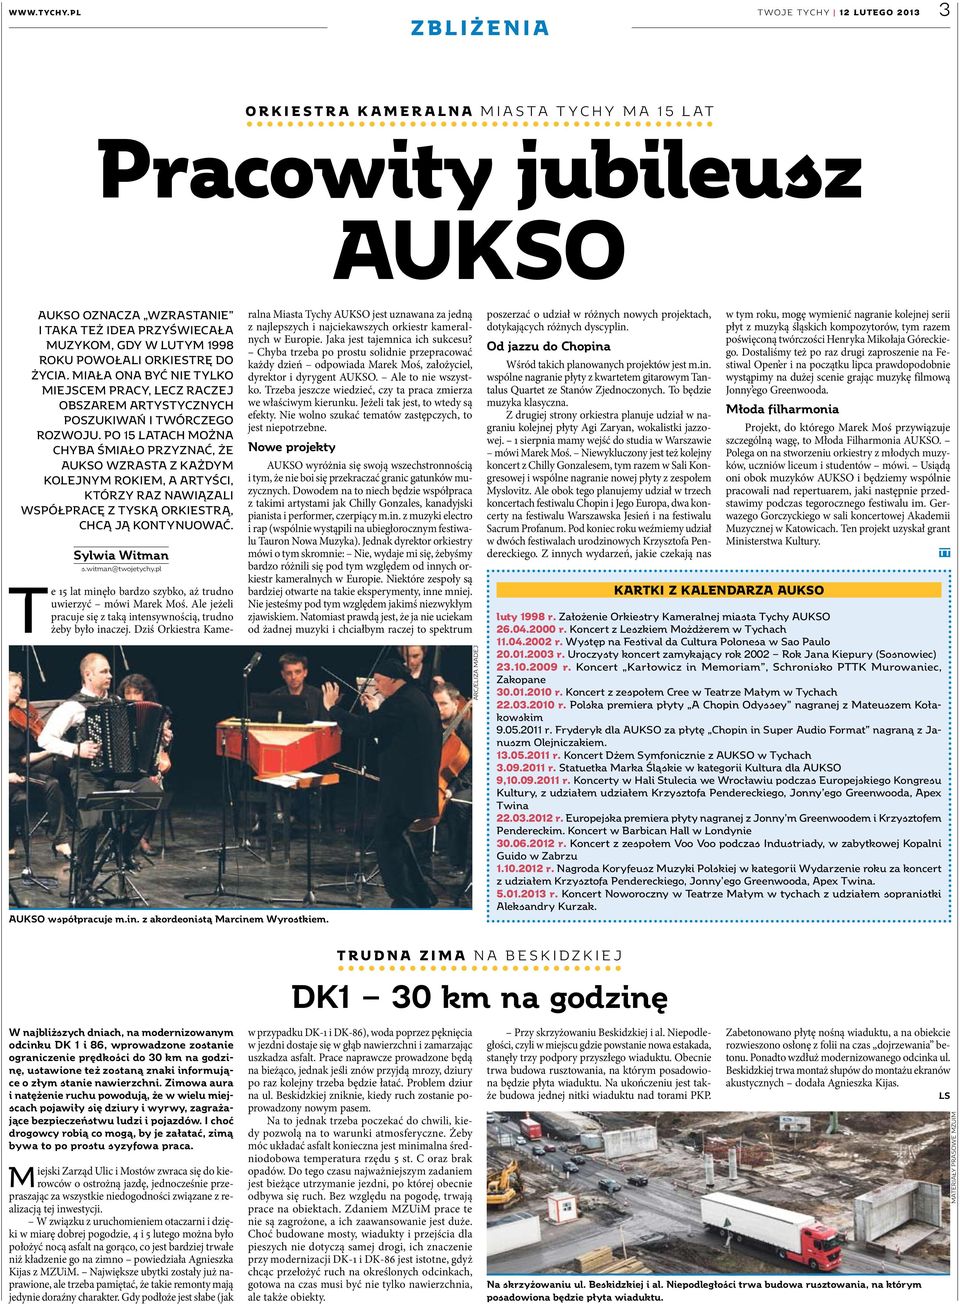 Po 15 latach można chyba śmiało przyznać, że AUKSO wzrasta z każdym kolejnym rokiem, a artyści, którzy raz nawiązali współpracę z tyską orkiestrą, chcą ją kontynuować. Sylwia Witman s.